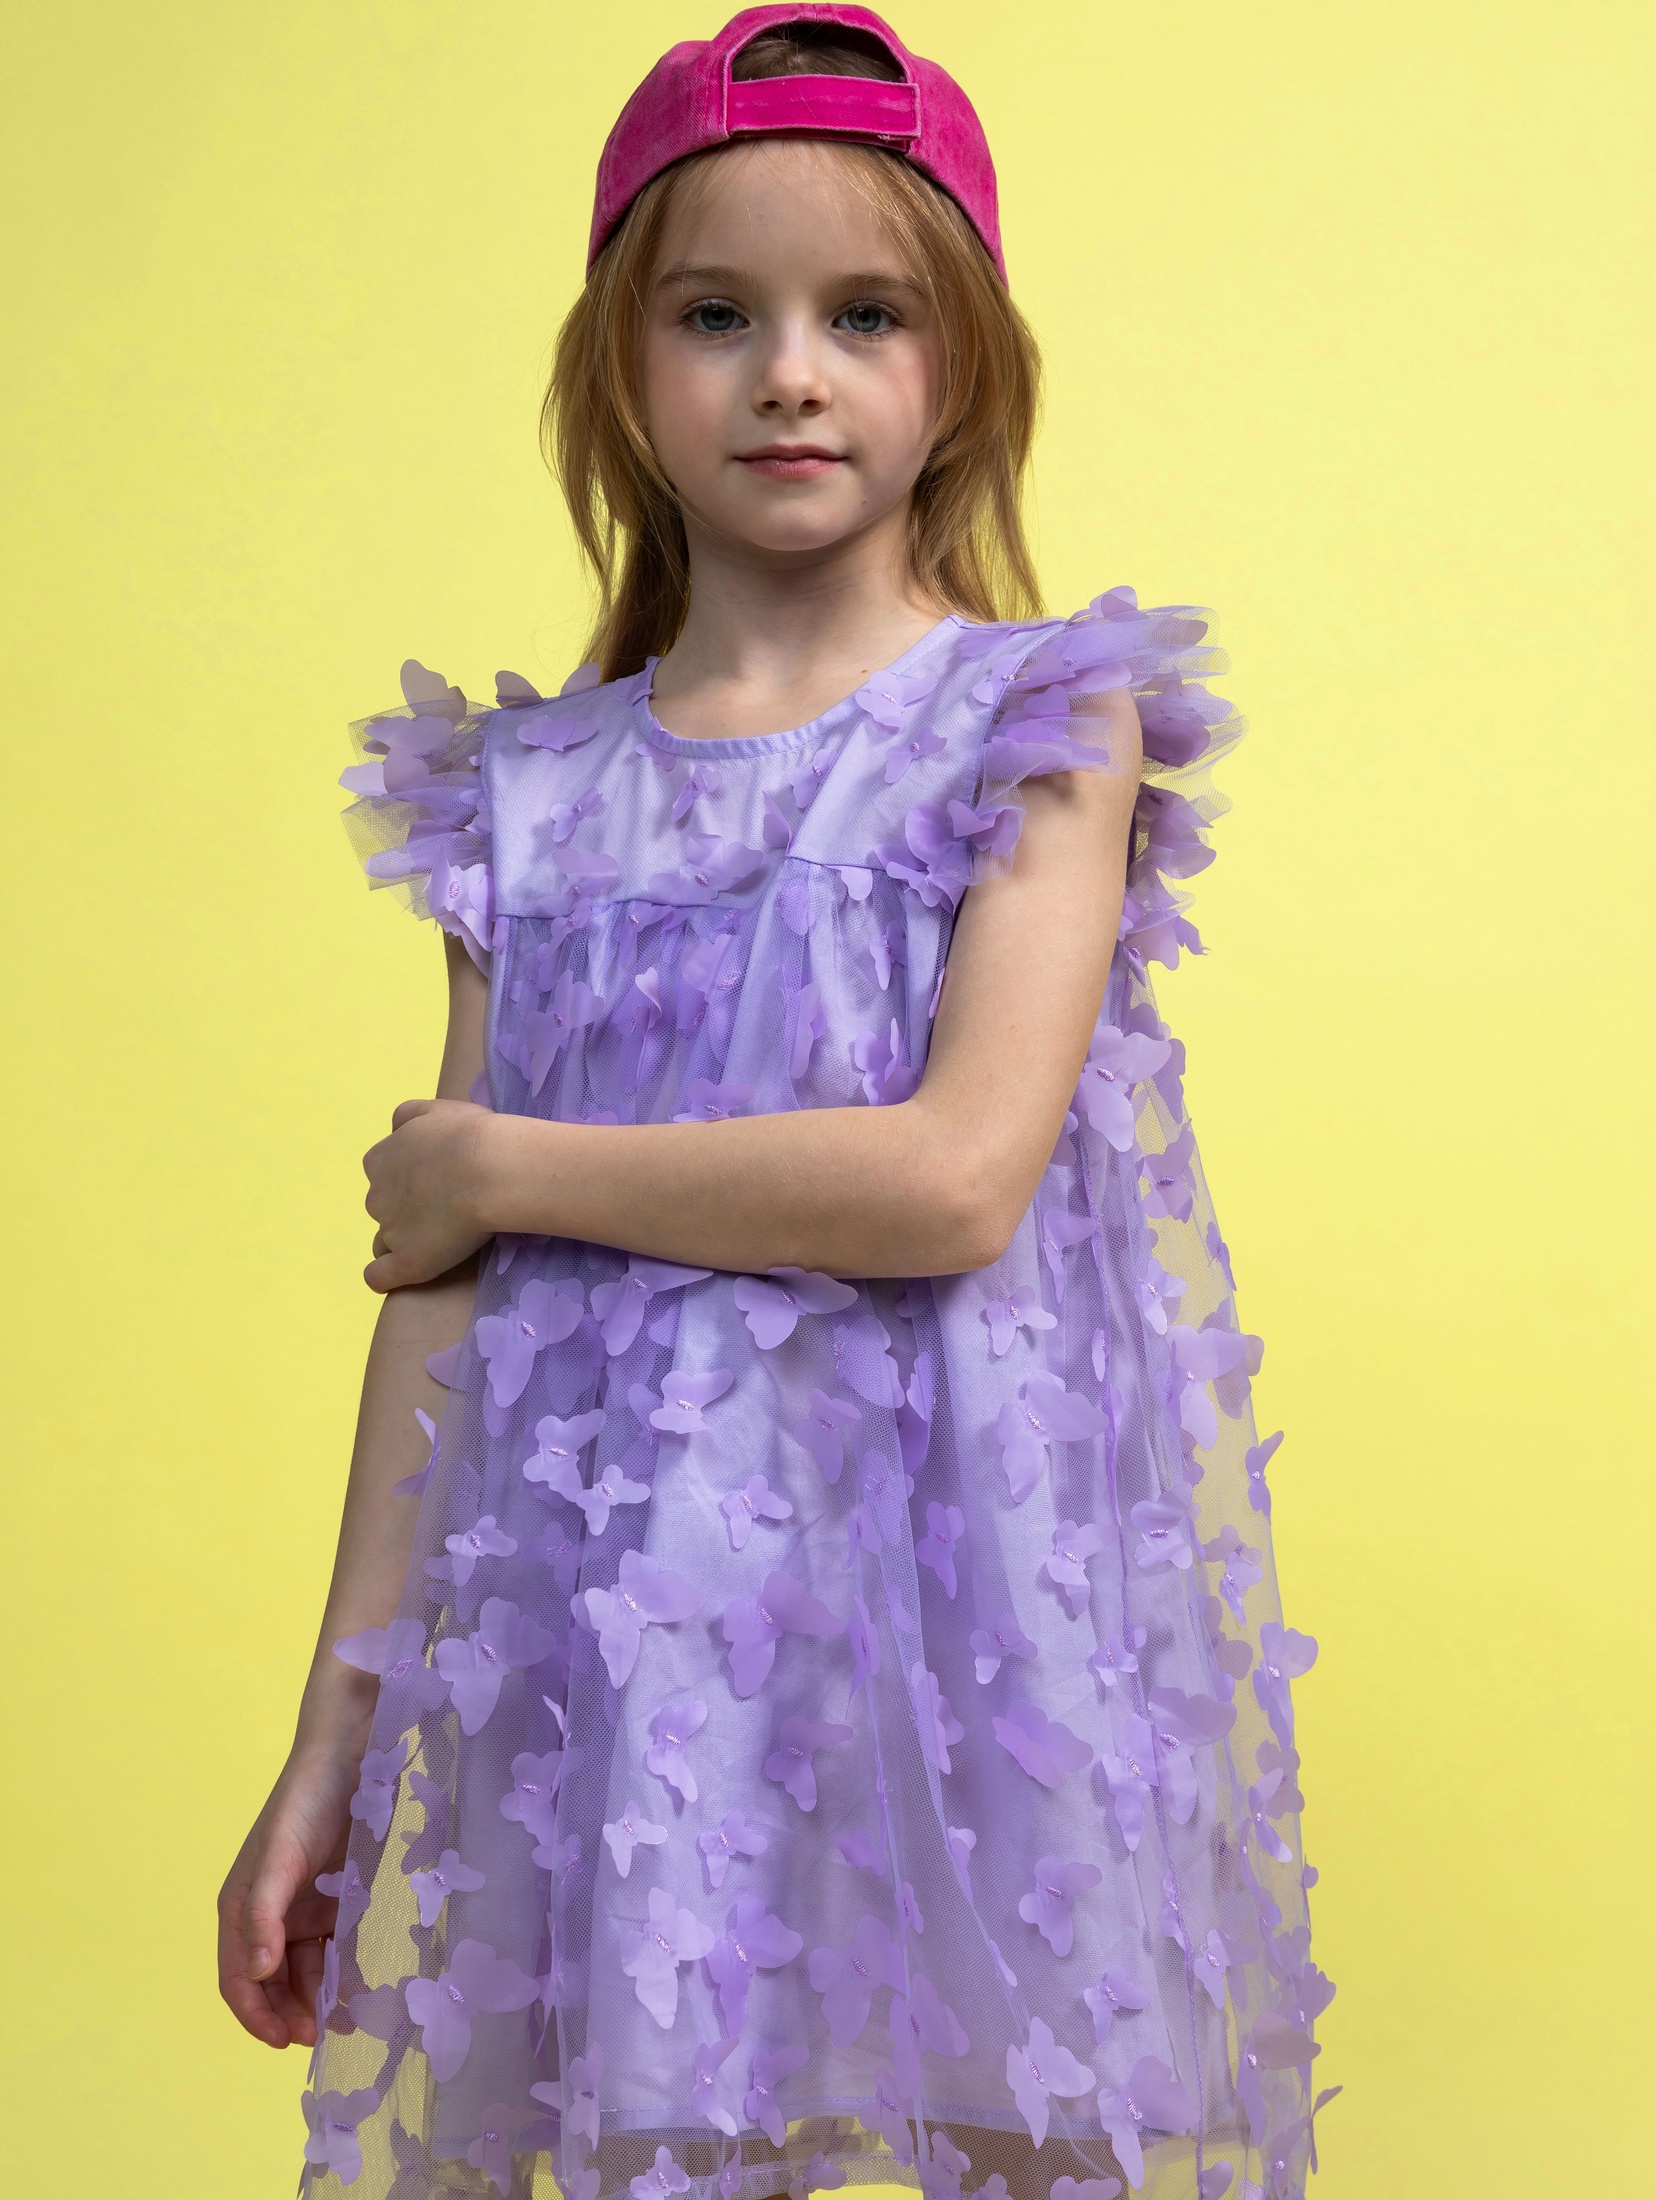 Fioletowa elegancka sukienka dziewczęca w motyle